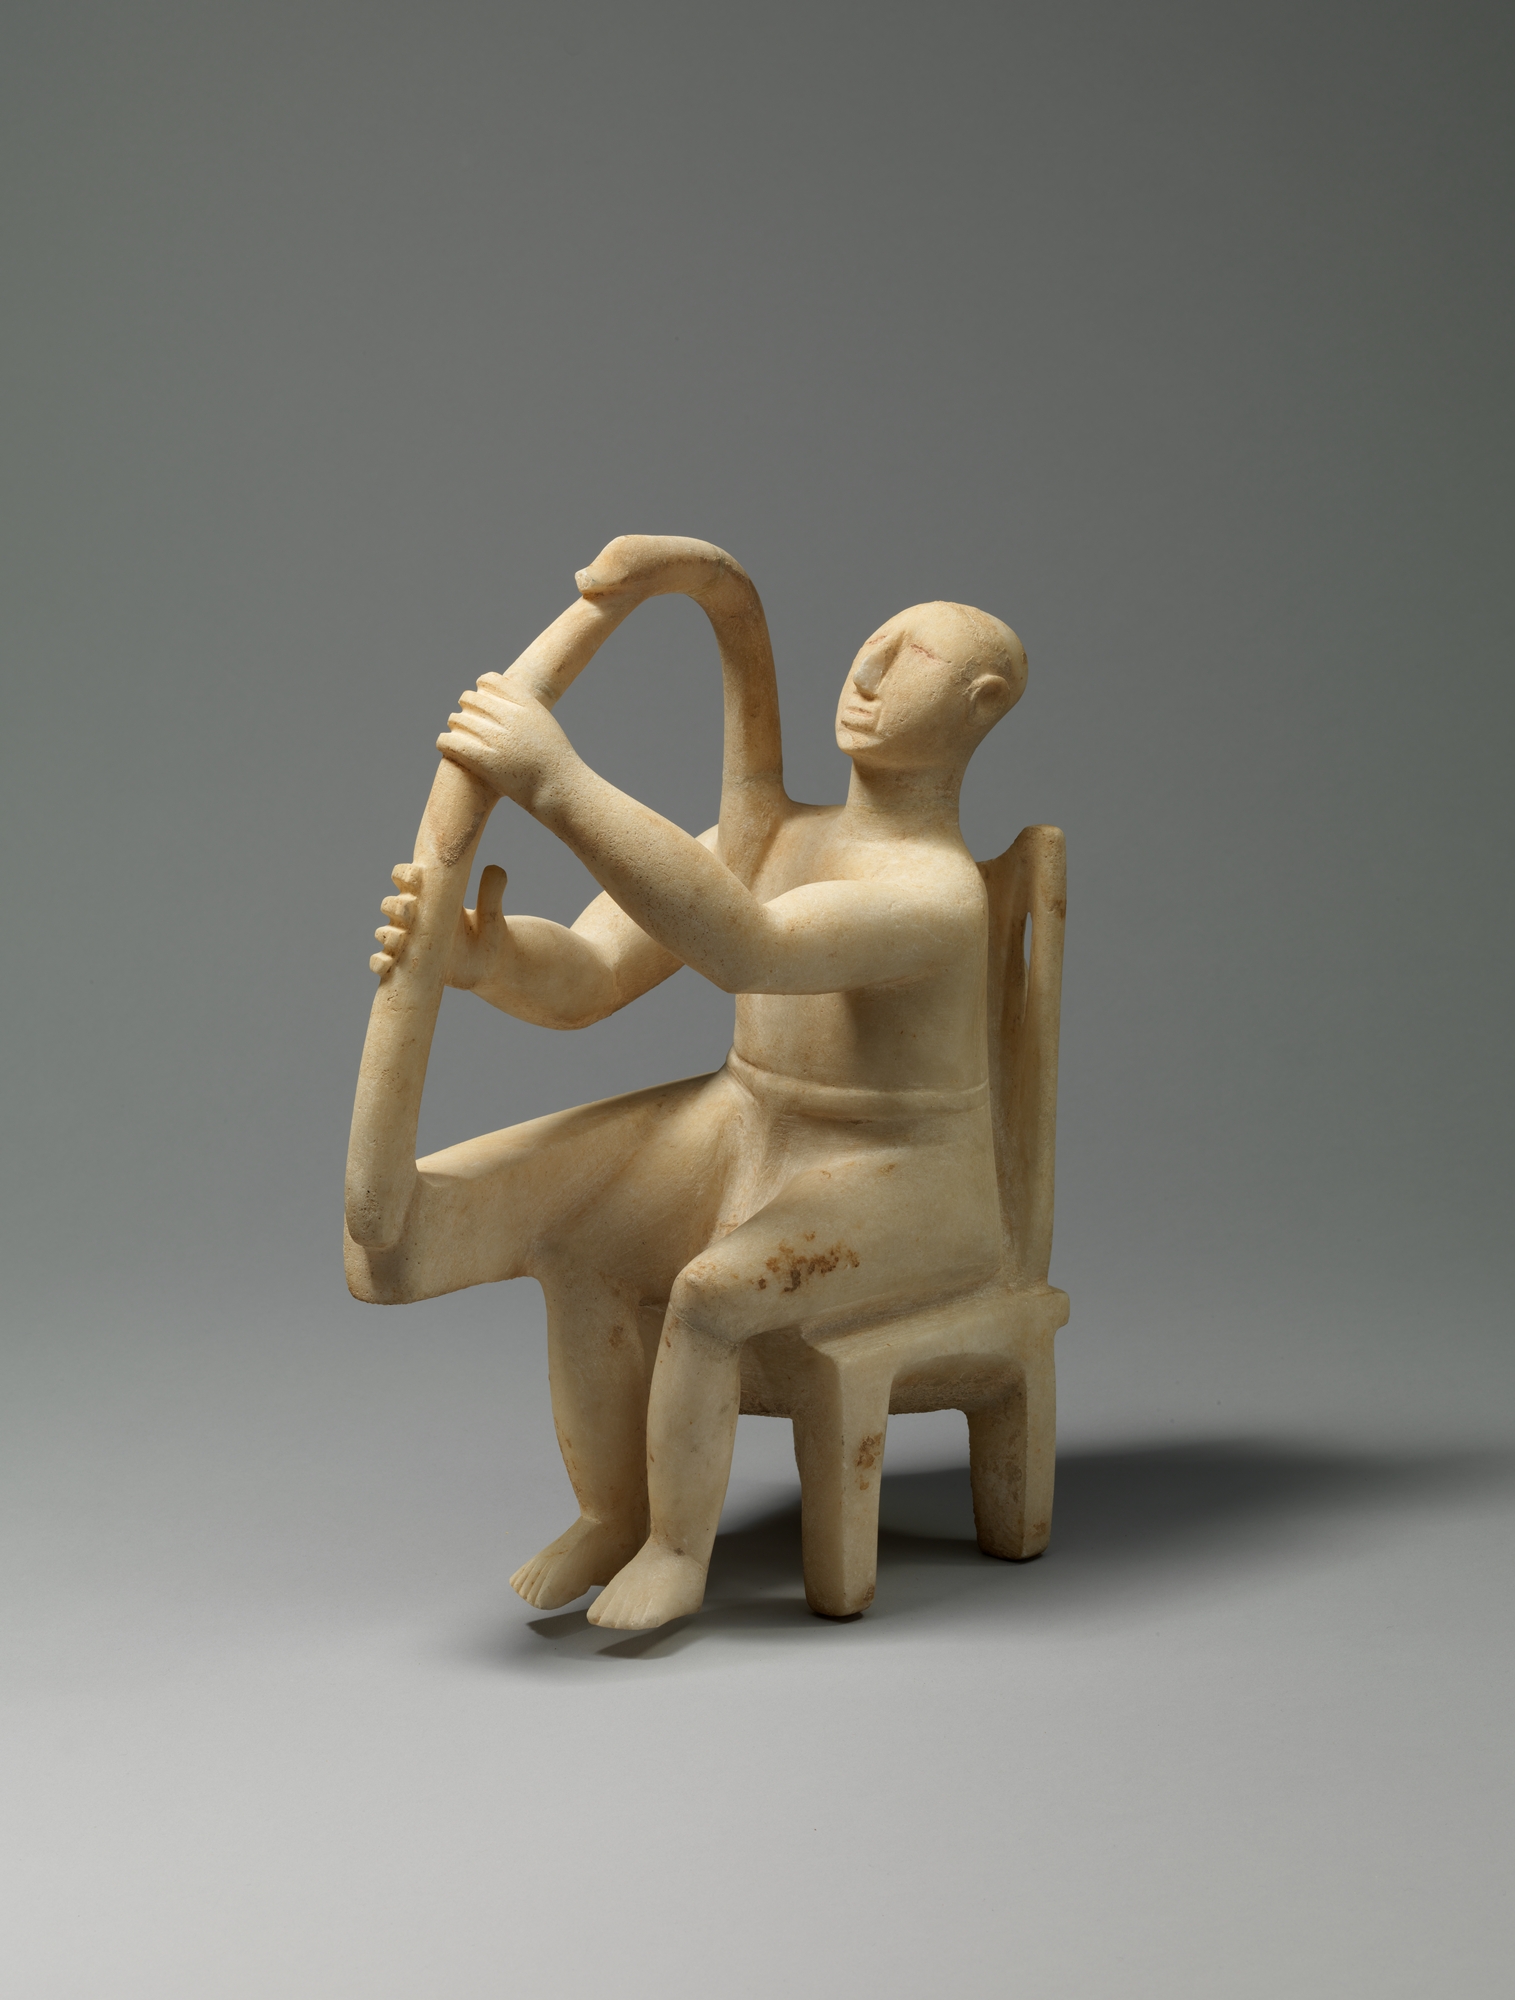 基克拉迪竖琴演奏者 by 未知艺术家  - 2800–2700 B.C. - 29.21 cm 